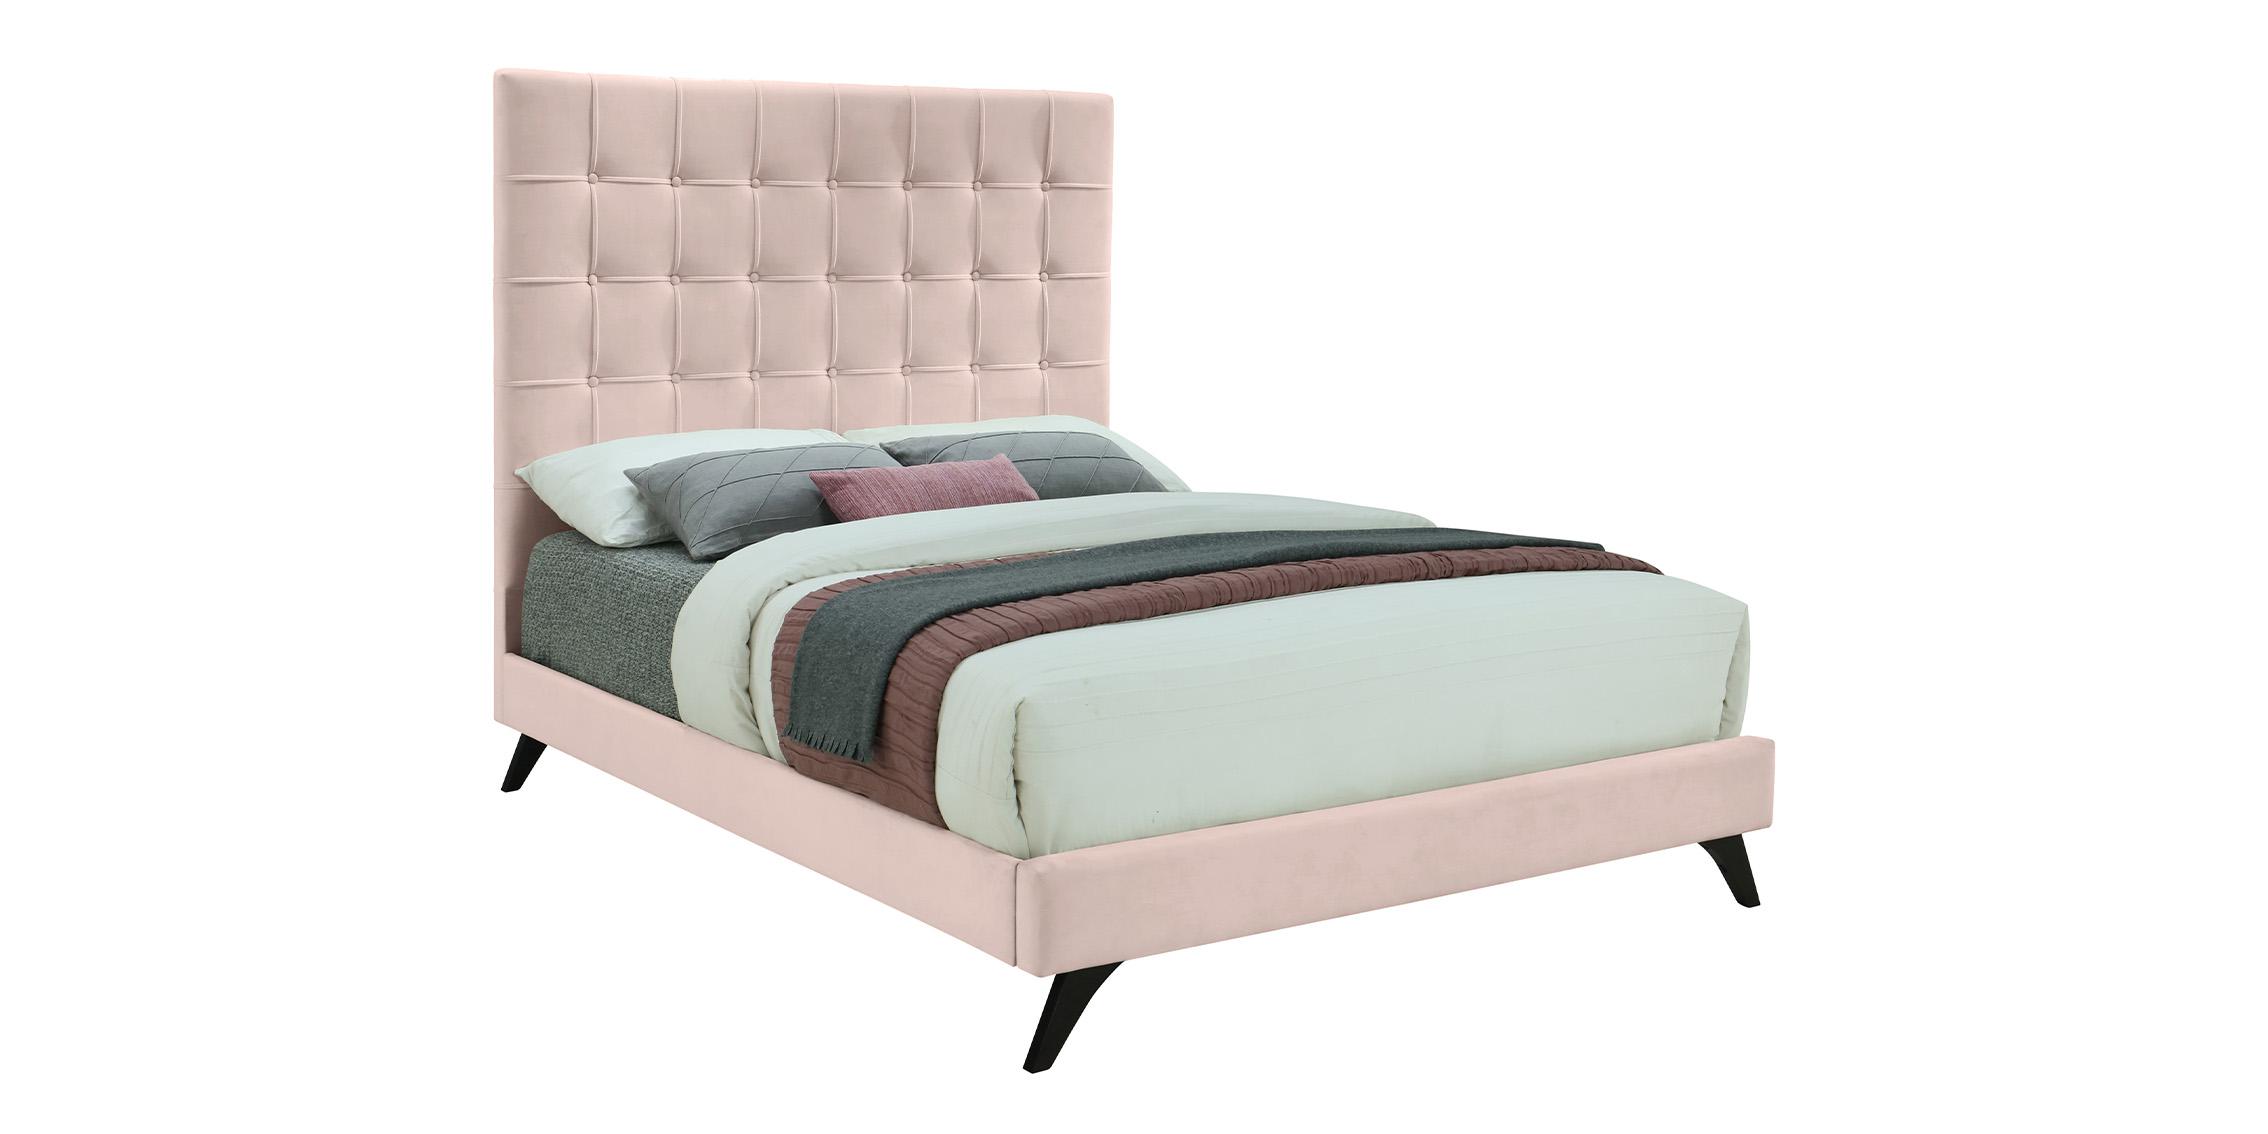 Contemporary, Modern Platform Bed ELLY EllyPink-F EllyPink-F in Espresso, Pink Fabric